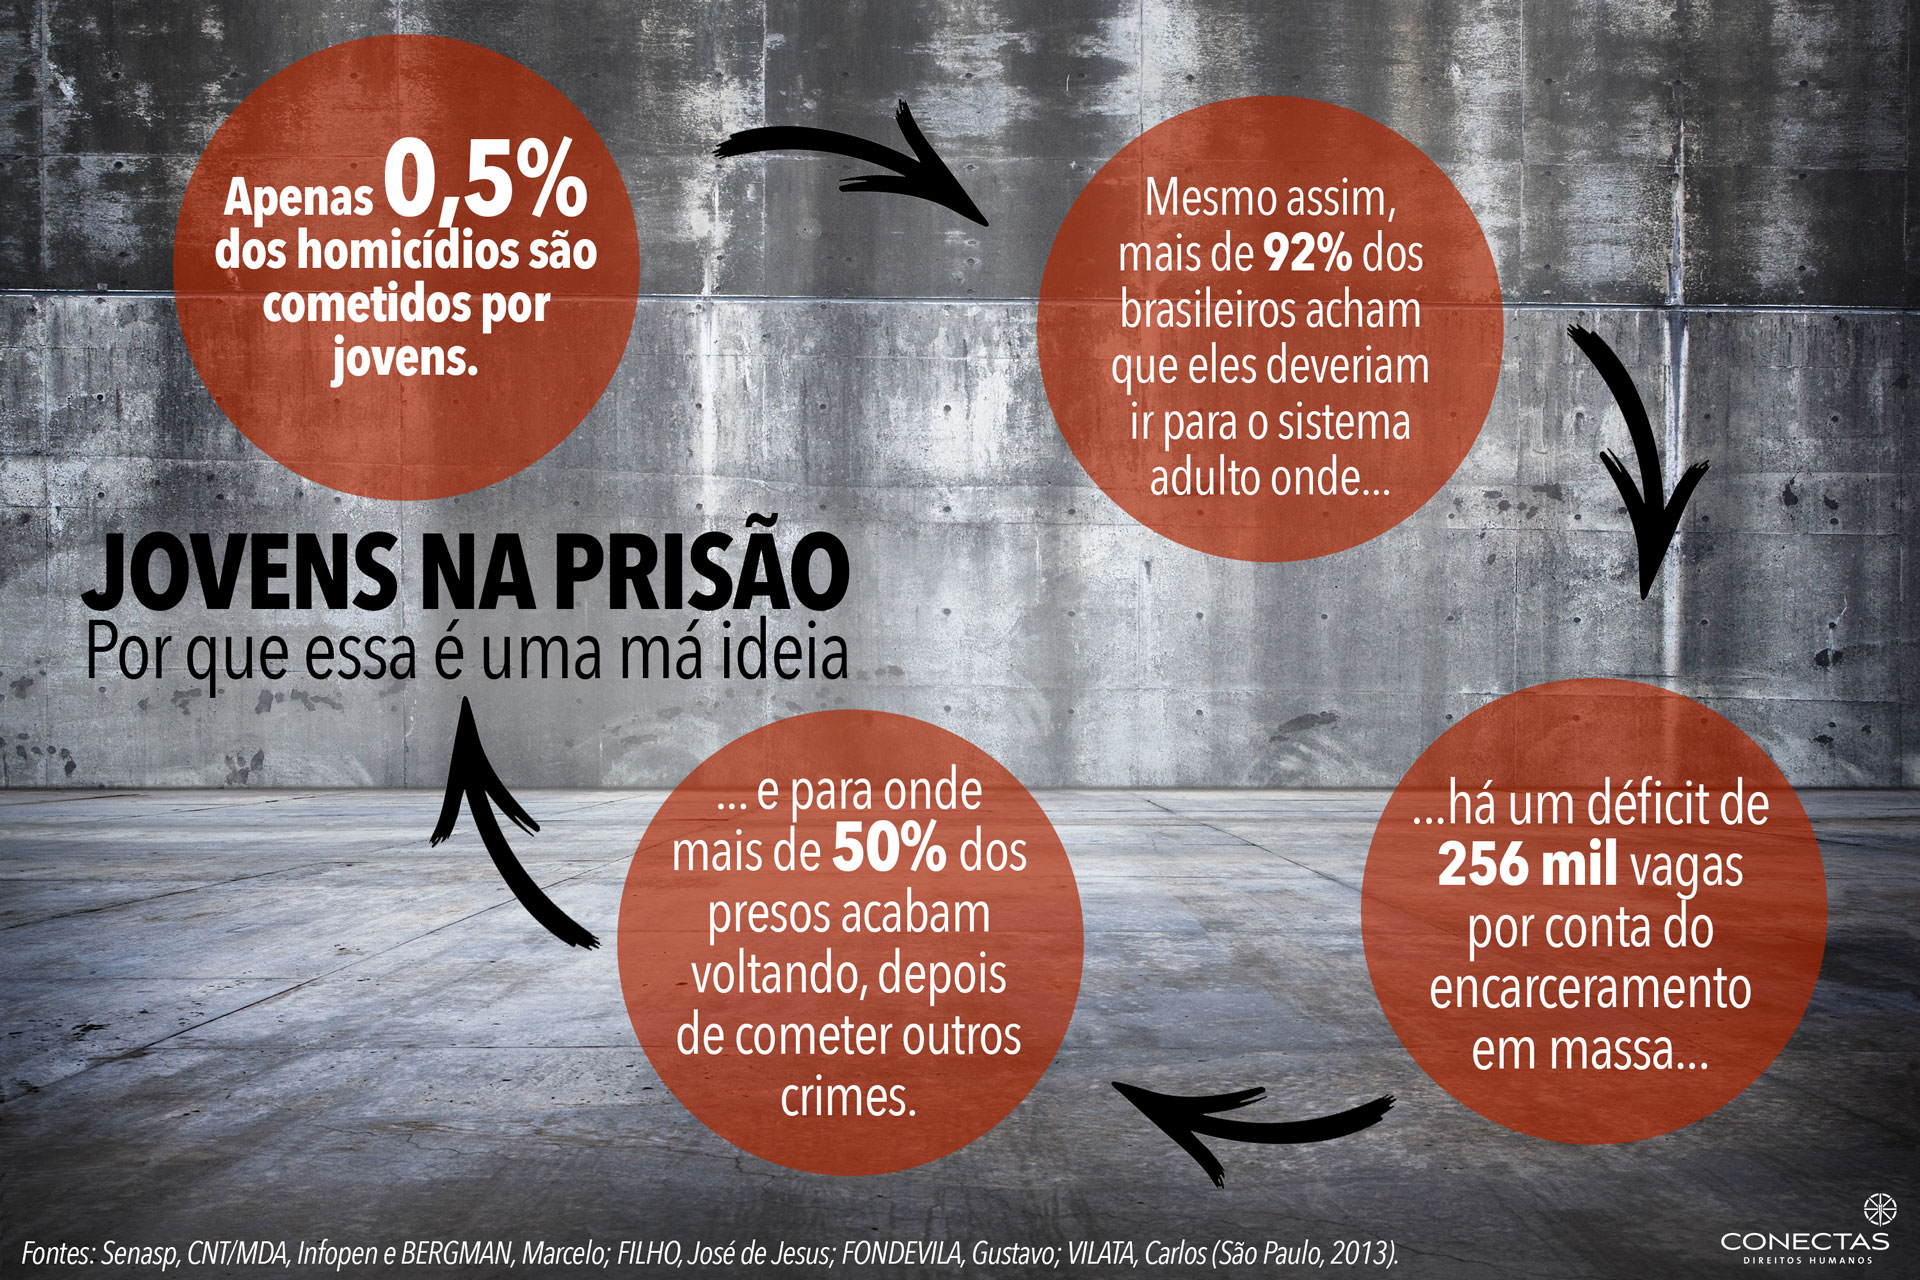 Redução da Maioridade Penal: Unesco se posiciona contrária à proposta no Brasil